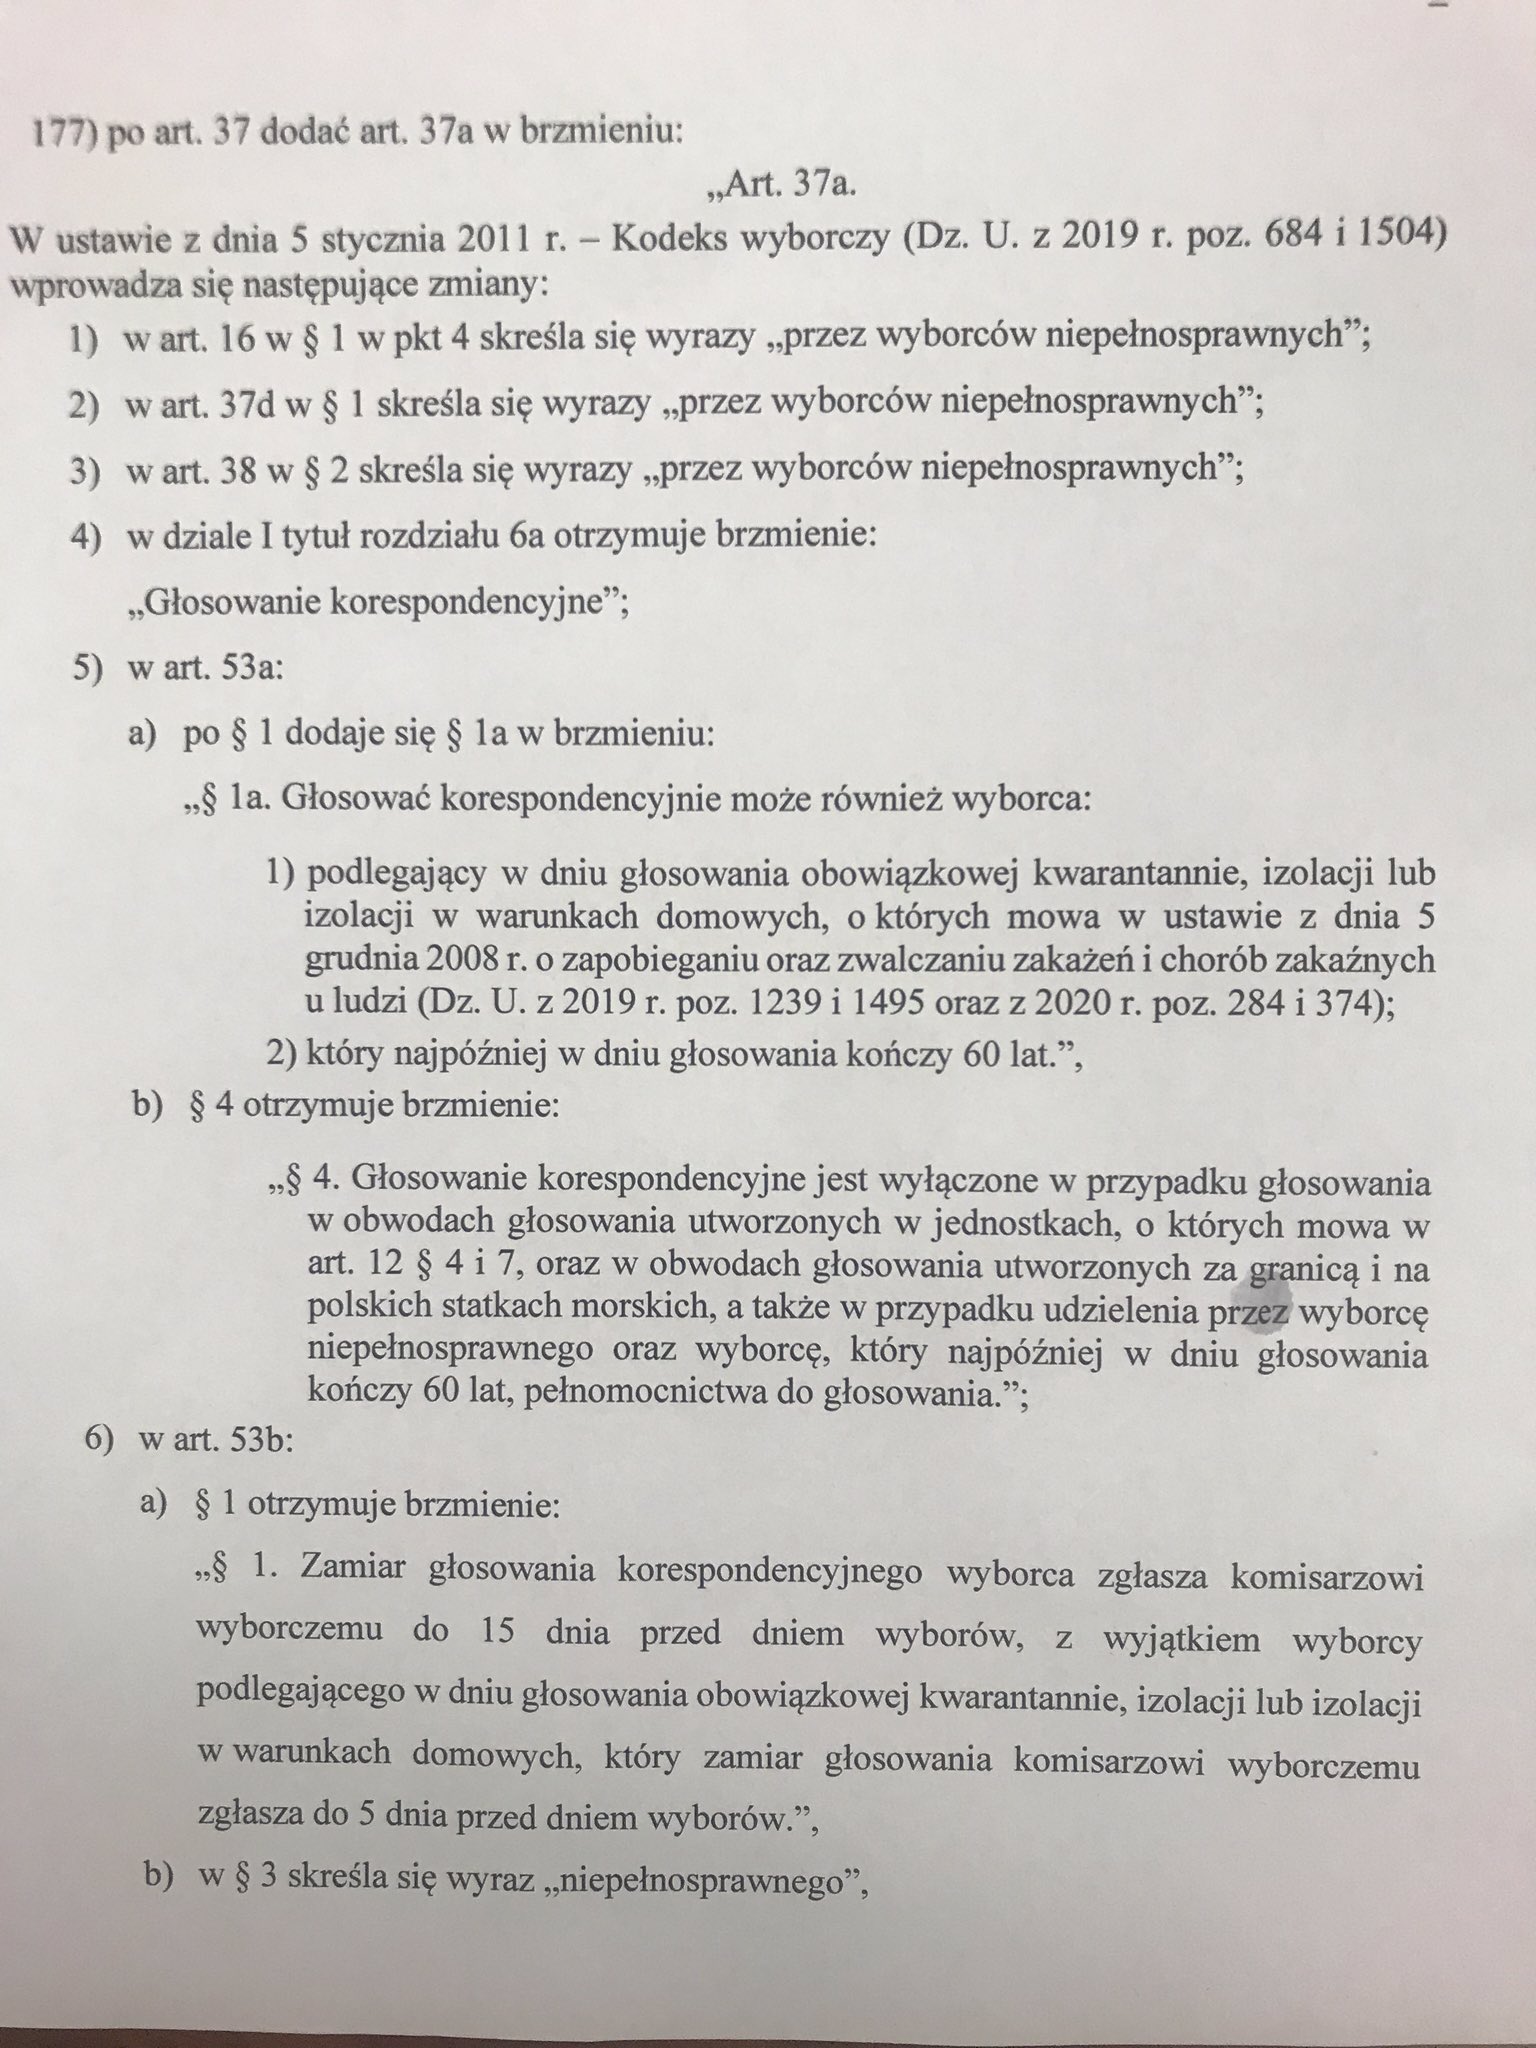 poprawka zmieniająca kodeks wyborczy, źródło: Twitter, Sławomir Nitras, 28 marca 2020